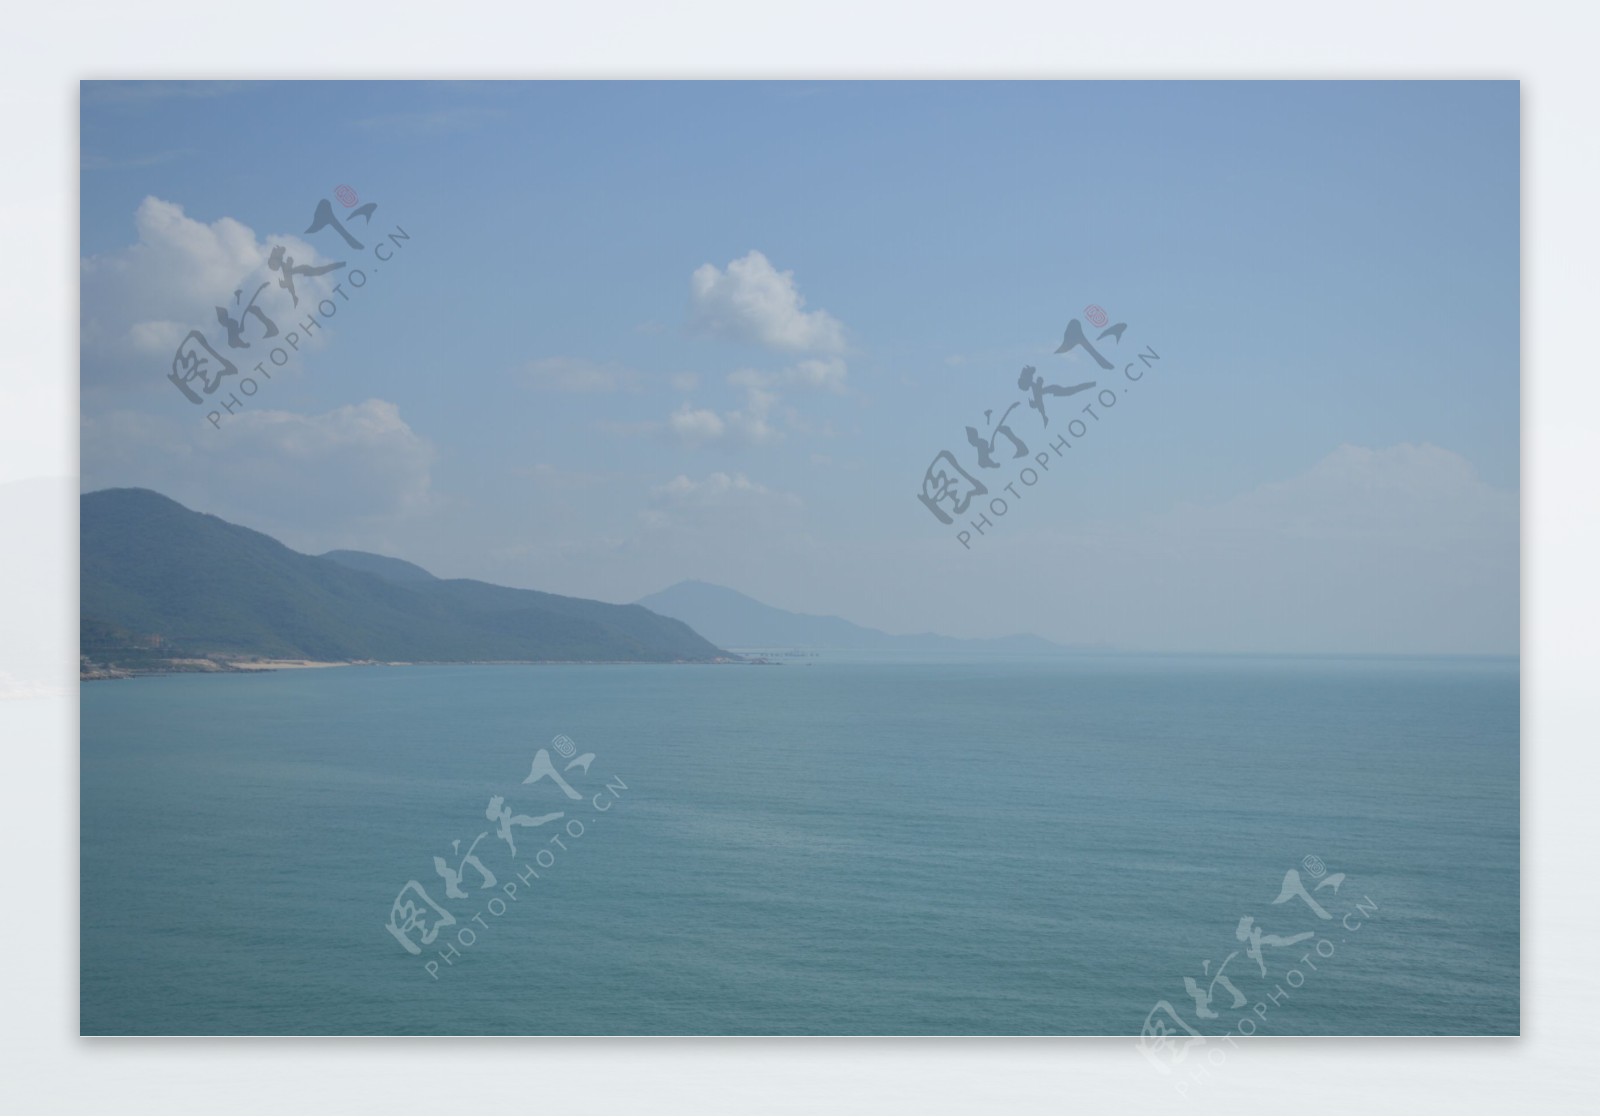 三亚海景图片